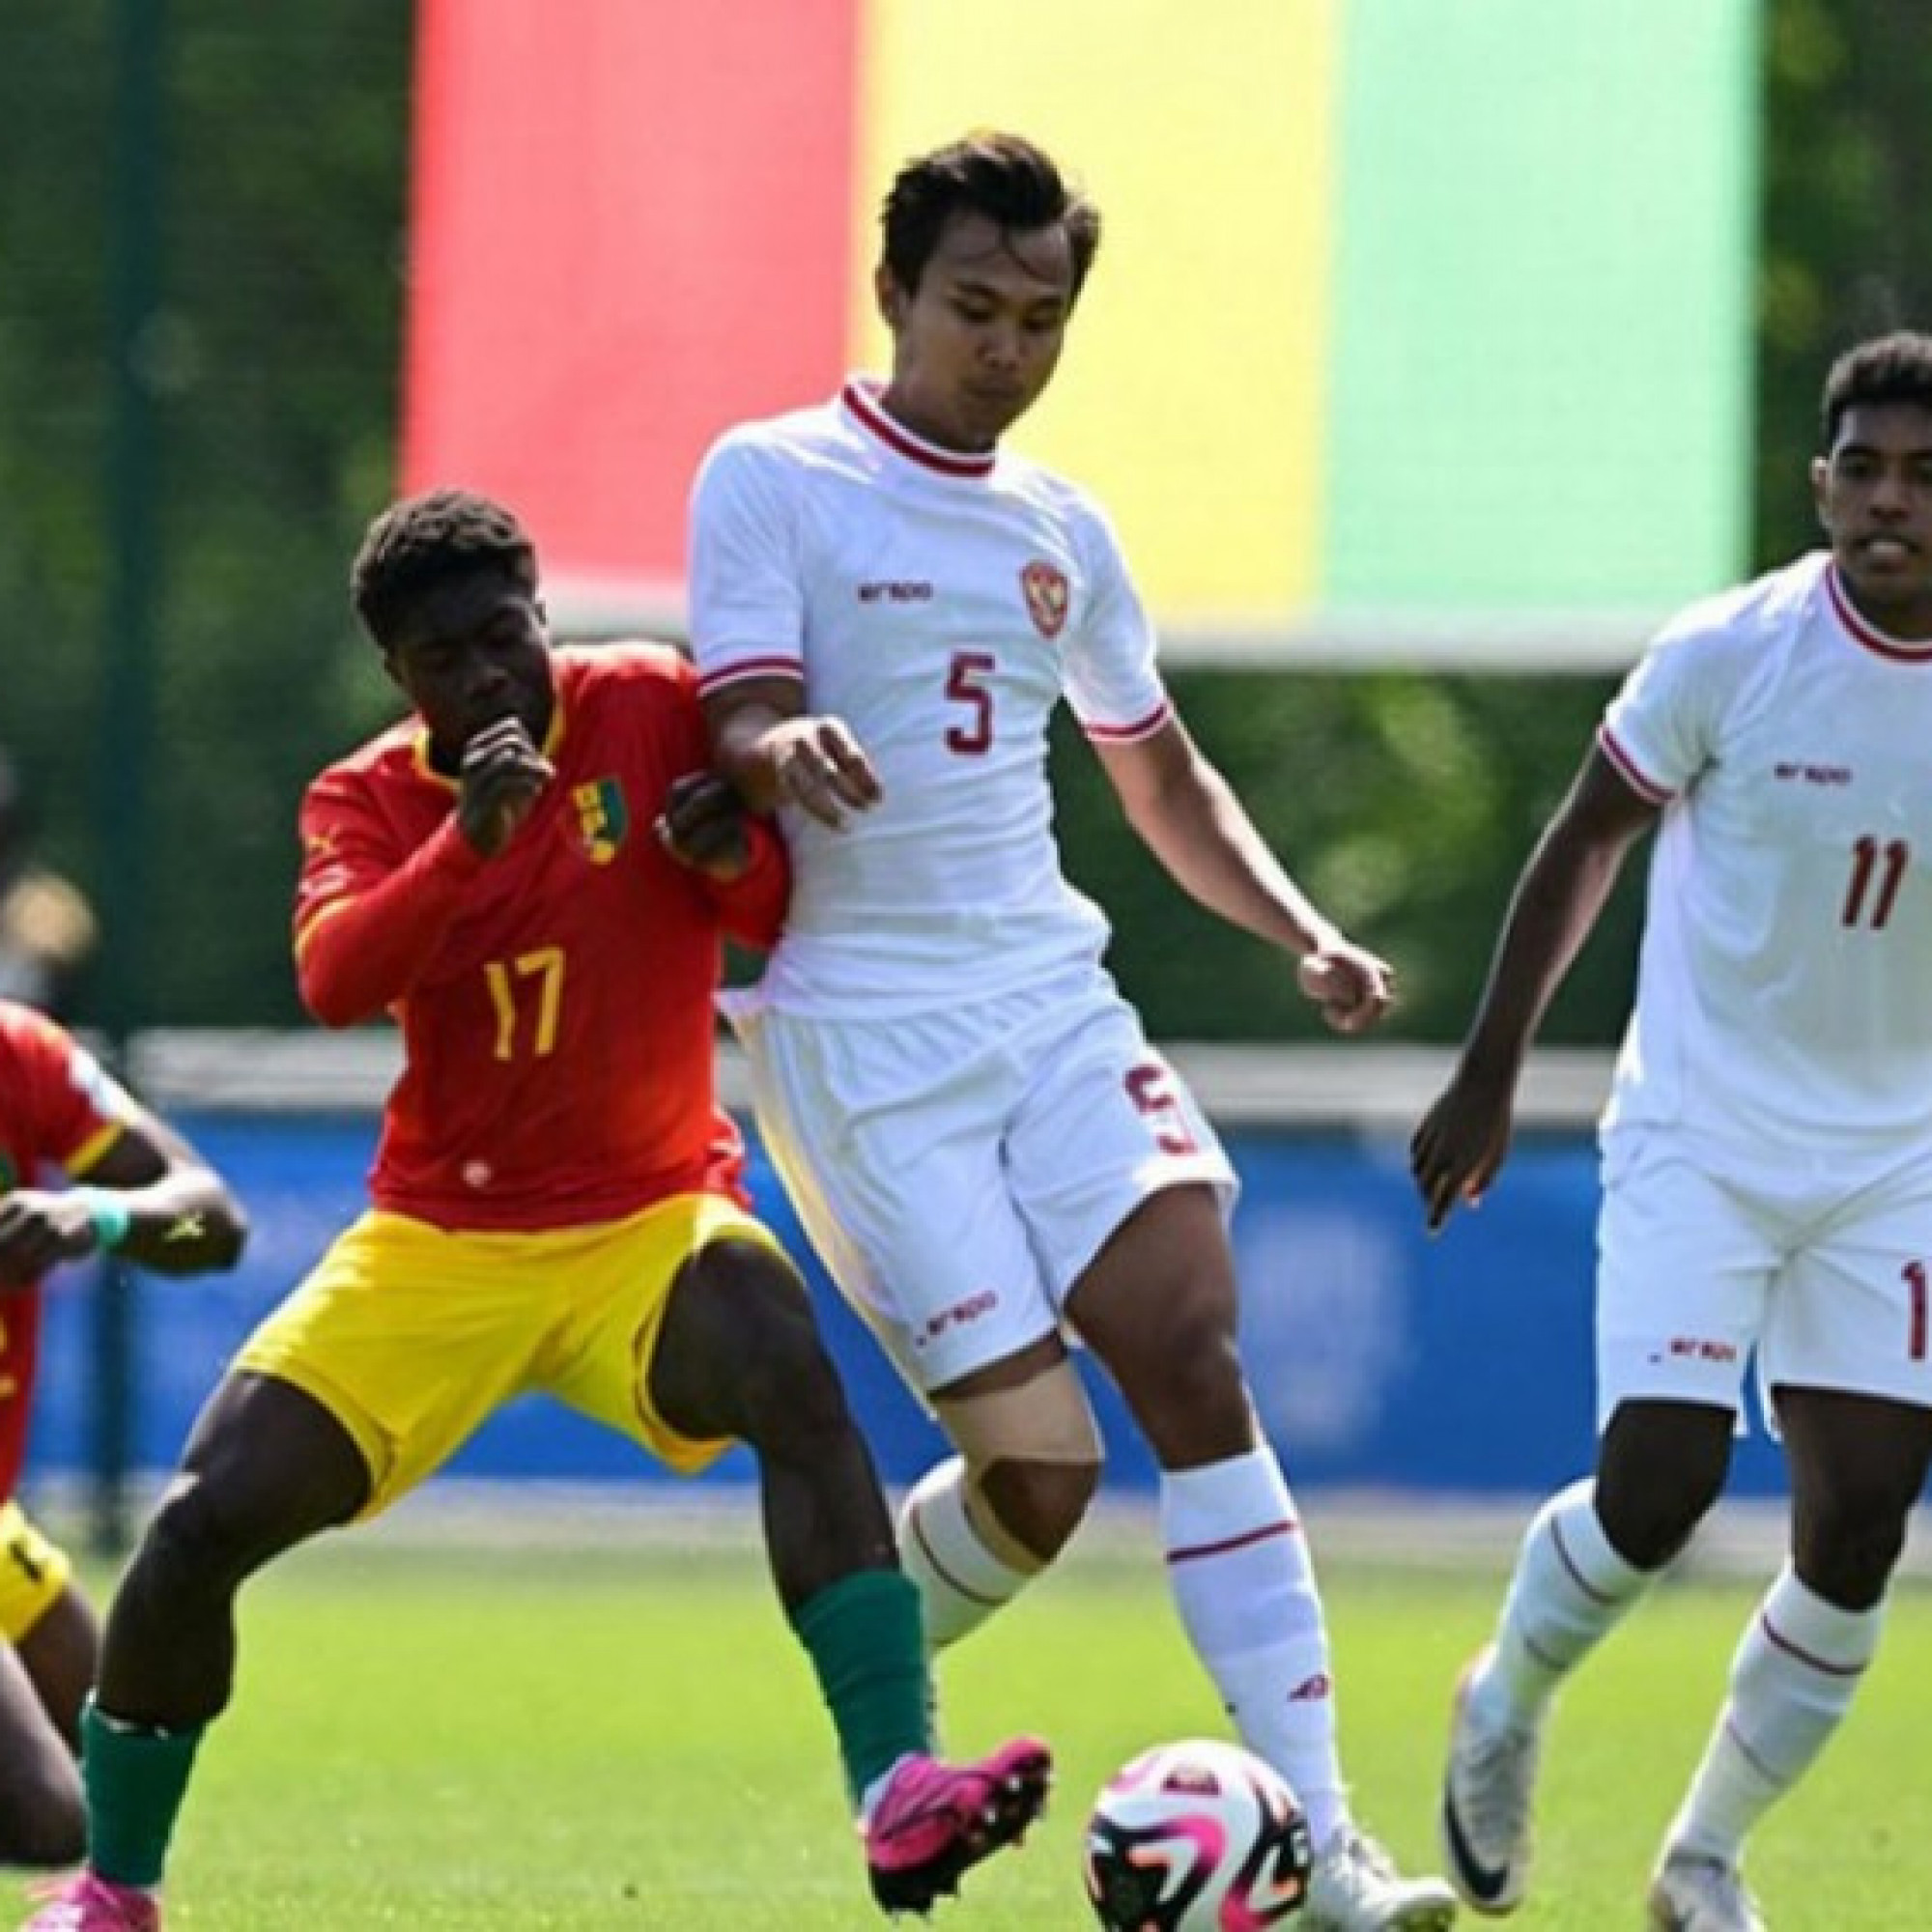  - Trực tiếp bóng đá U23 Indonesia - U23 Guinea: "Xứ Vạn đảo" thoát thua penalty, dốc sức tấn công (Play-off Olympic)